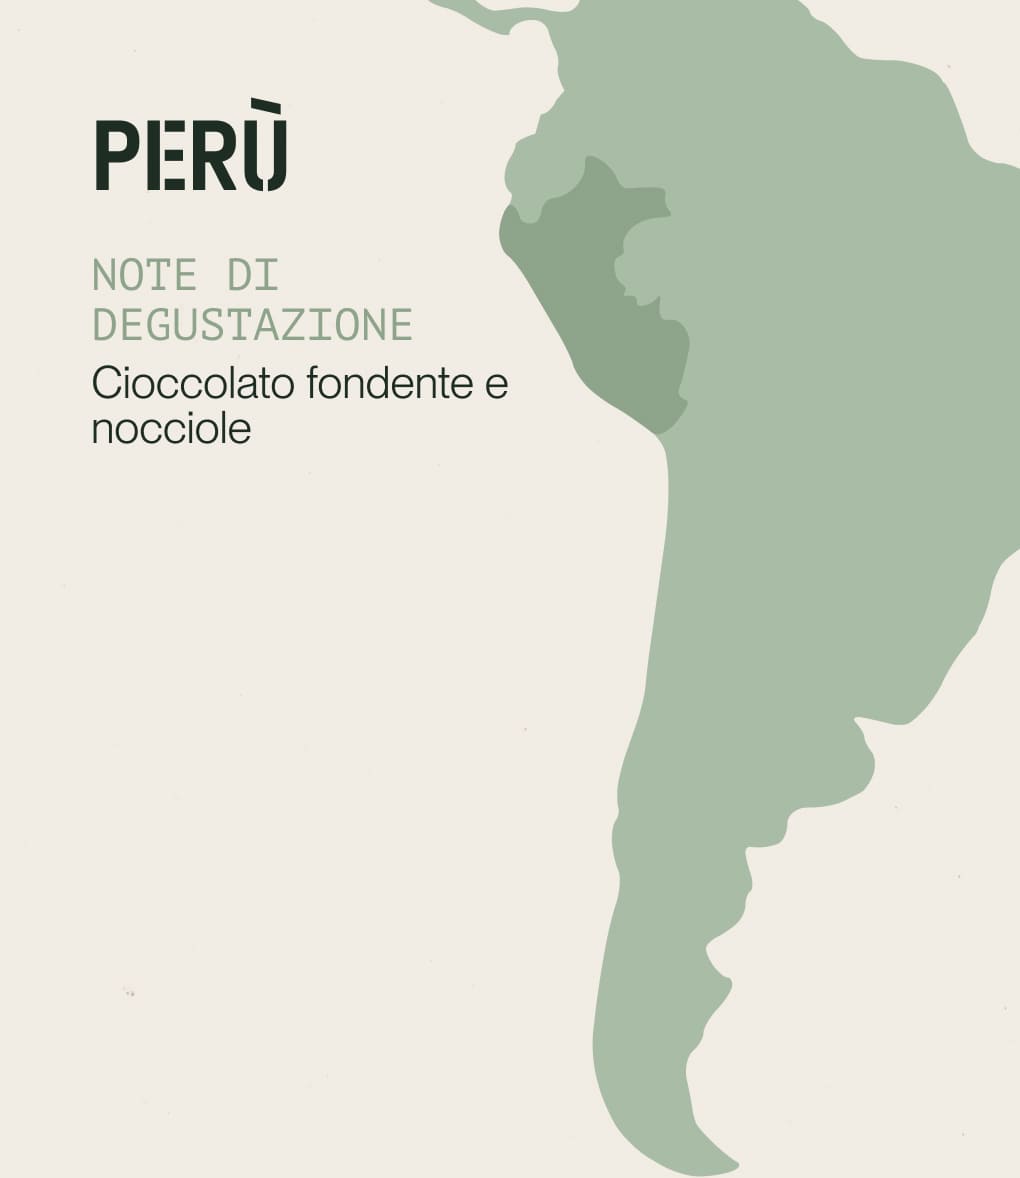 Note di degustazione di caffè di specialità proveniente dal Perù